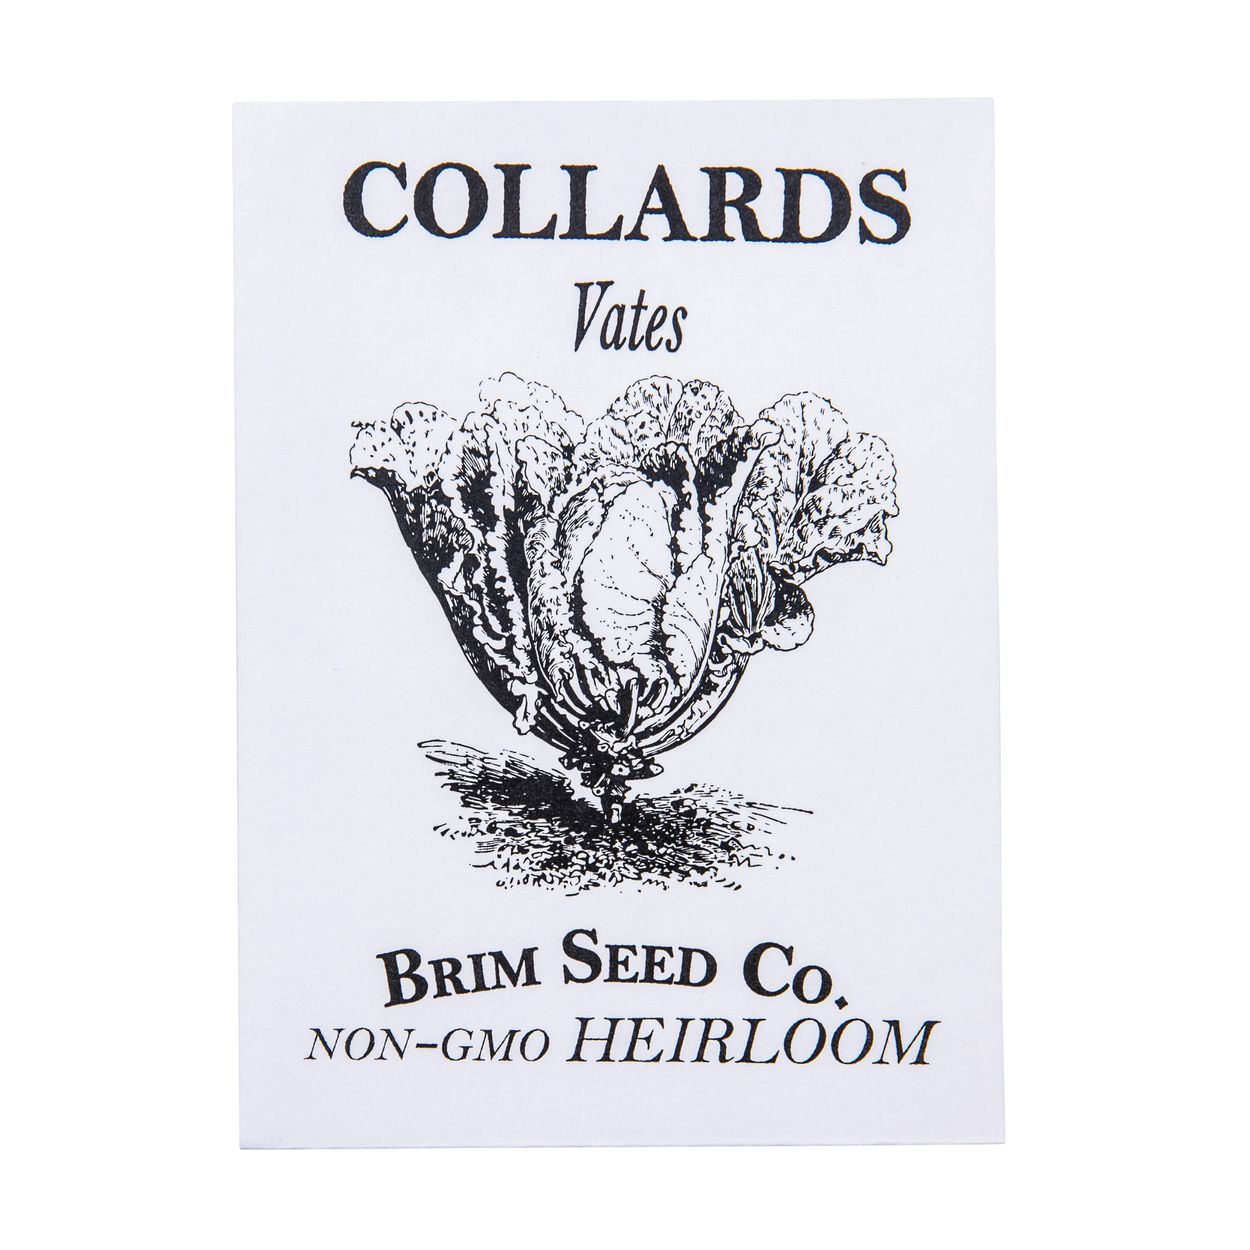 Brim Seed Co. - Vates Collards Heirloom Seed